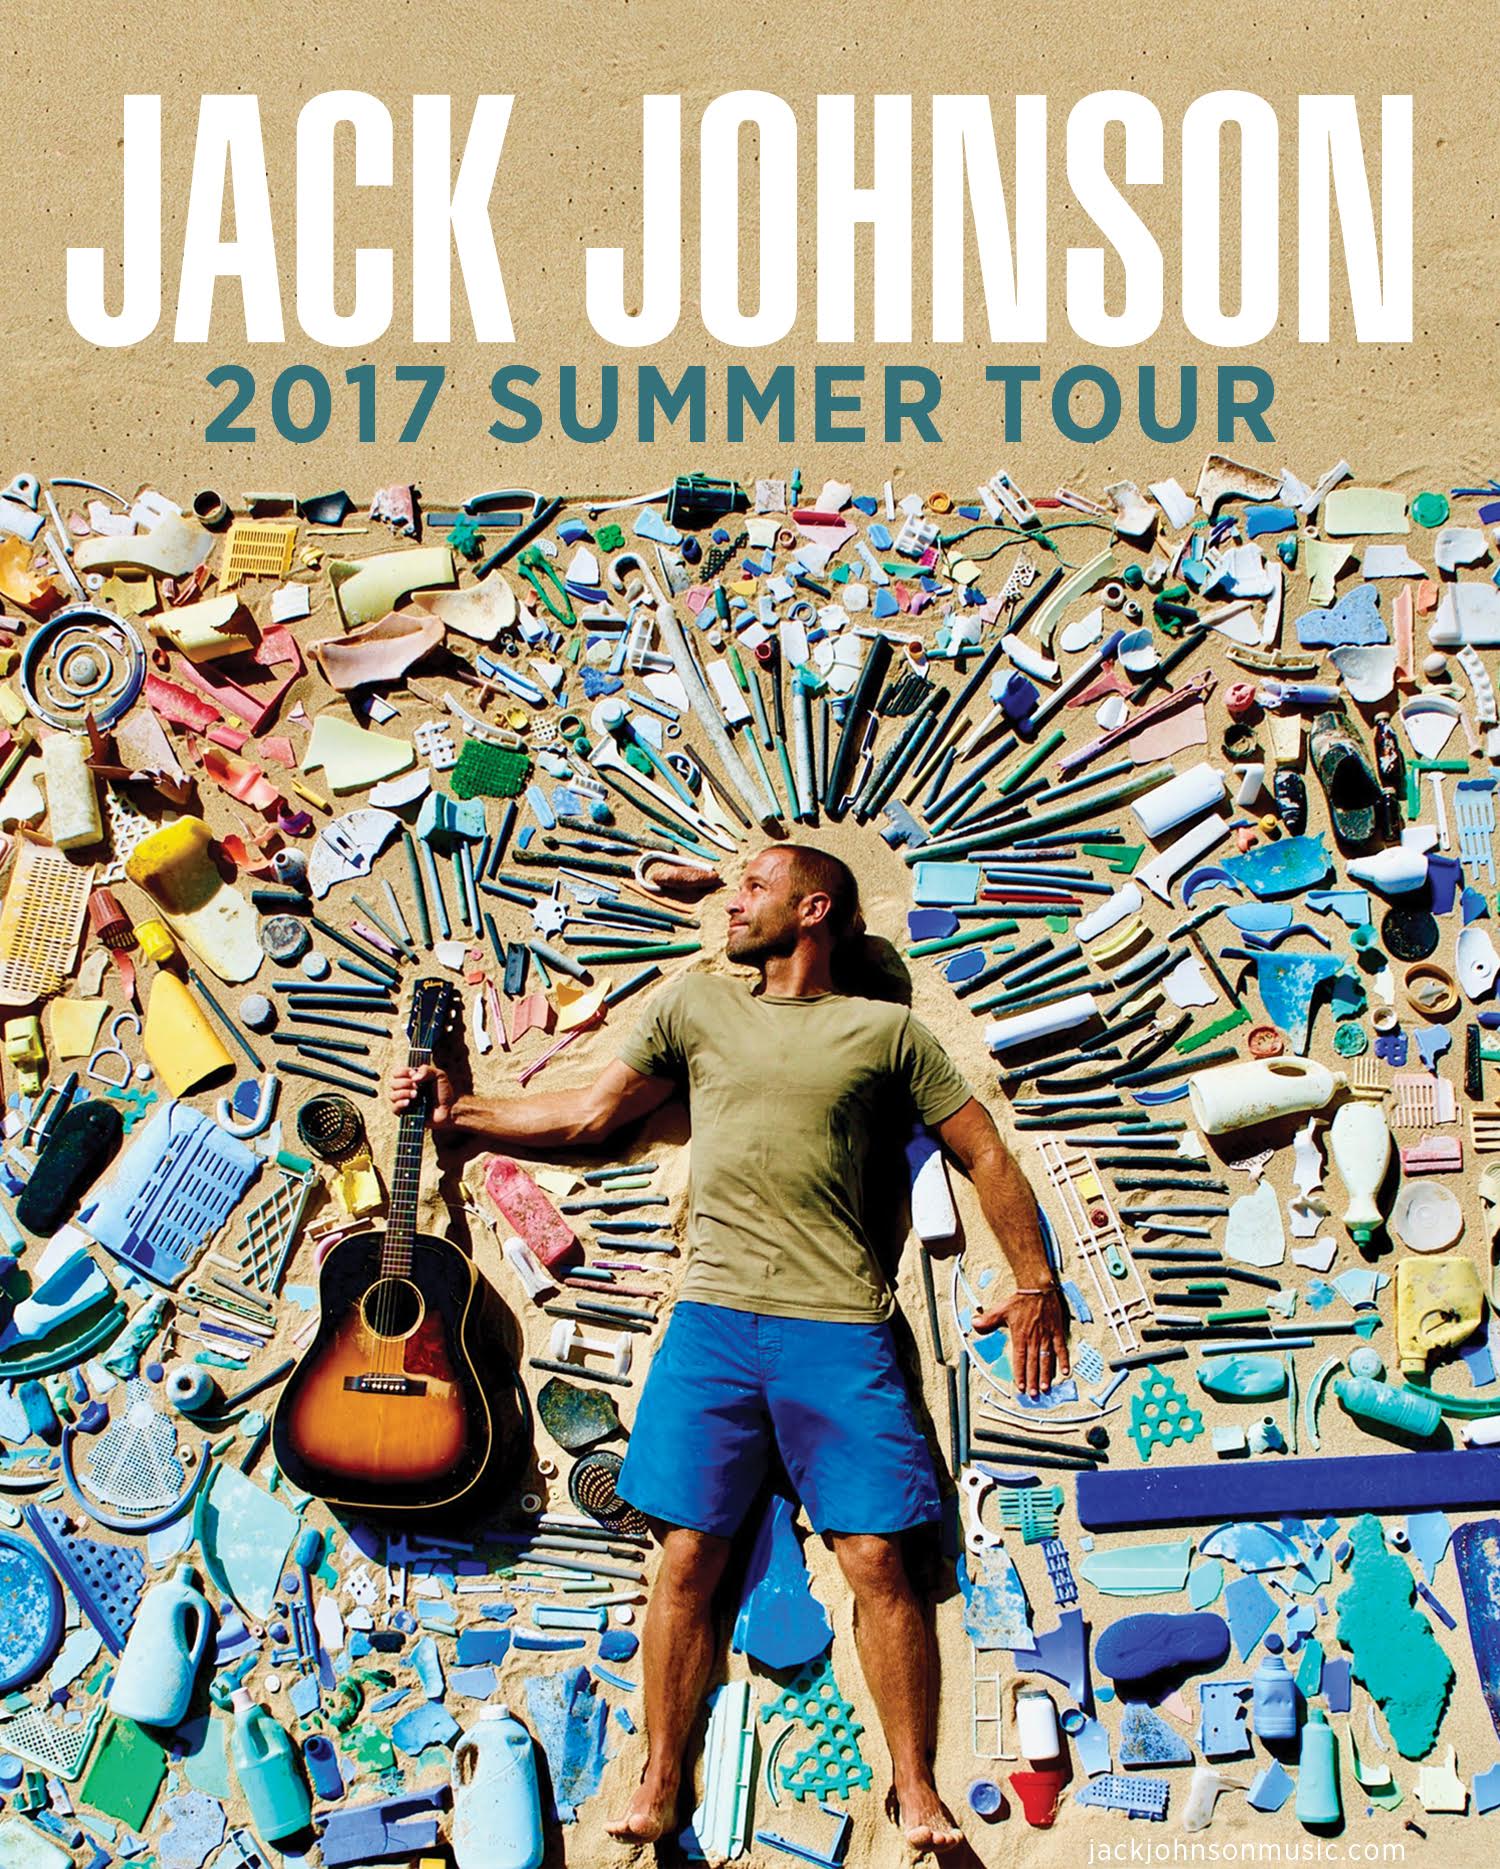 Presale Codes for Jack Johnson Tour - TM Verified Fan Codes & Unique